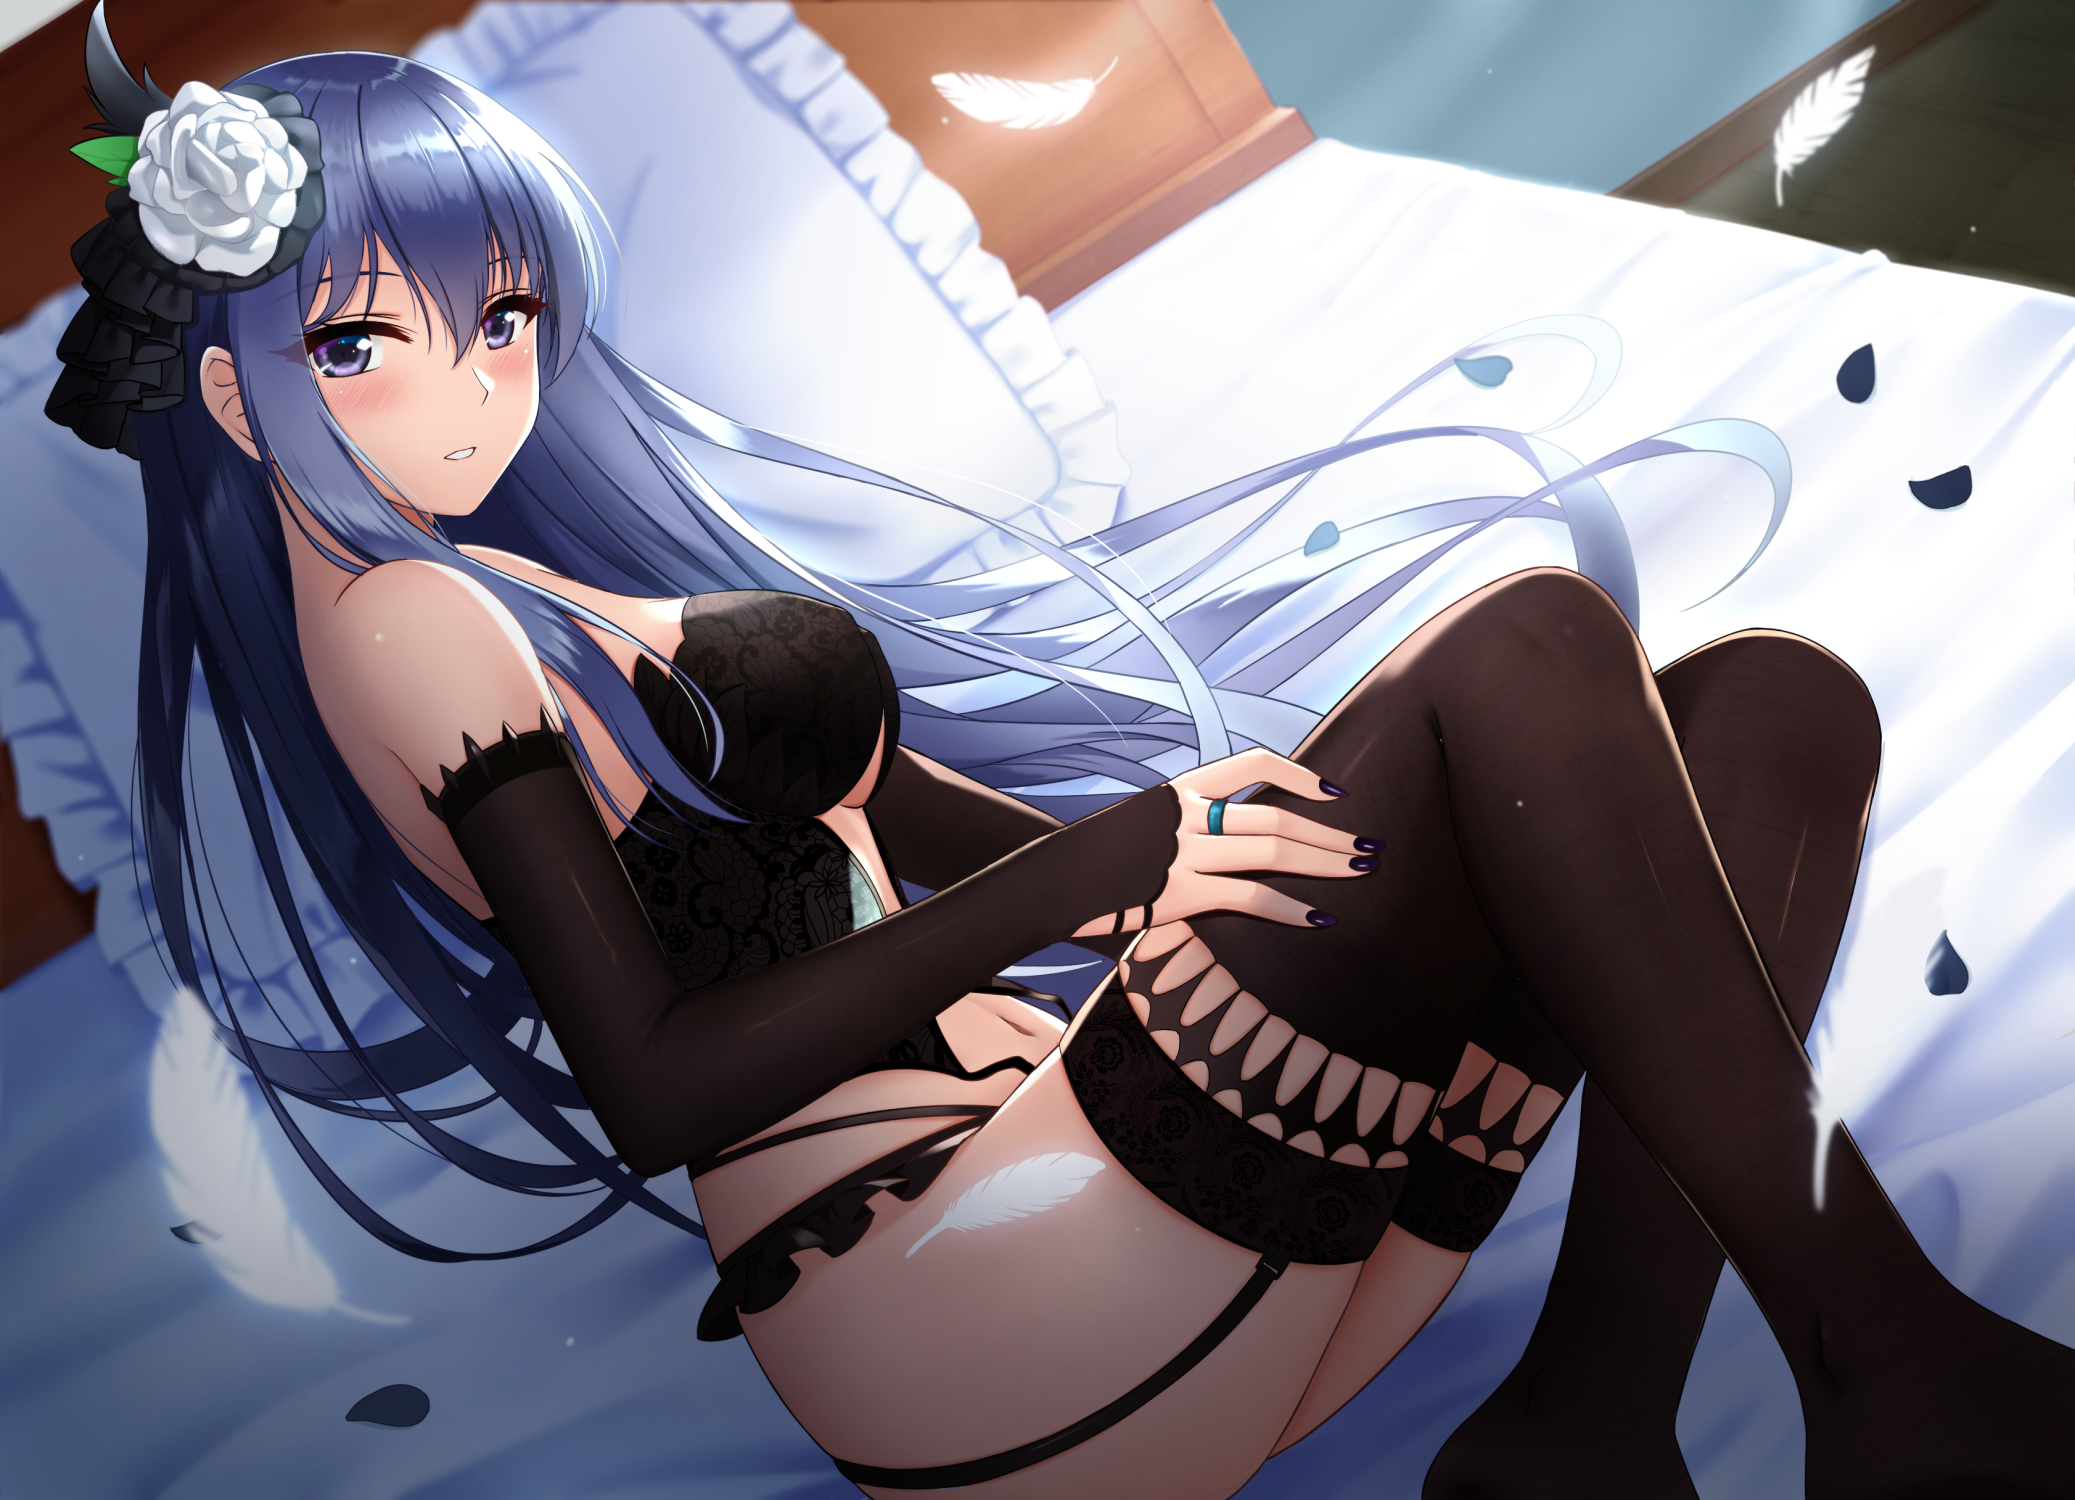 Anime 2075x1500 anime anime girls RKO artwork in bed long hair blue hair lingerie thigh-highs